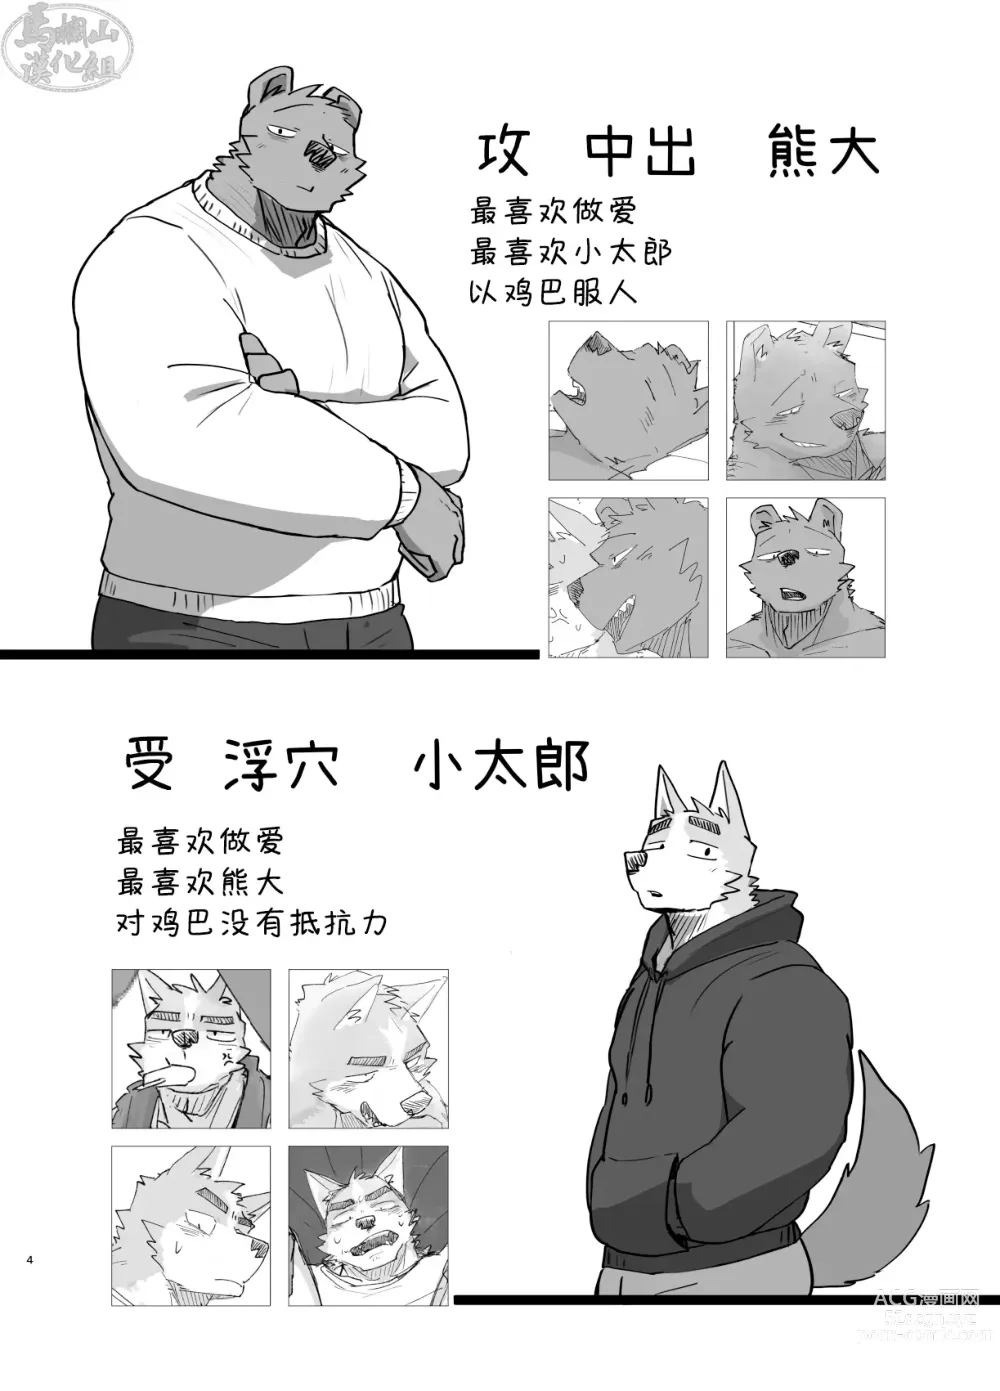 Page 4 of doujinshi 温泉野合时